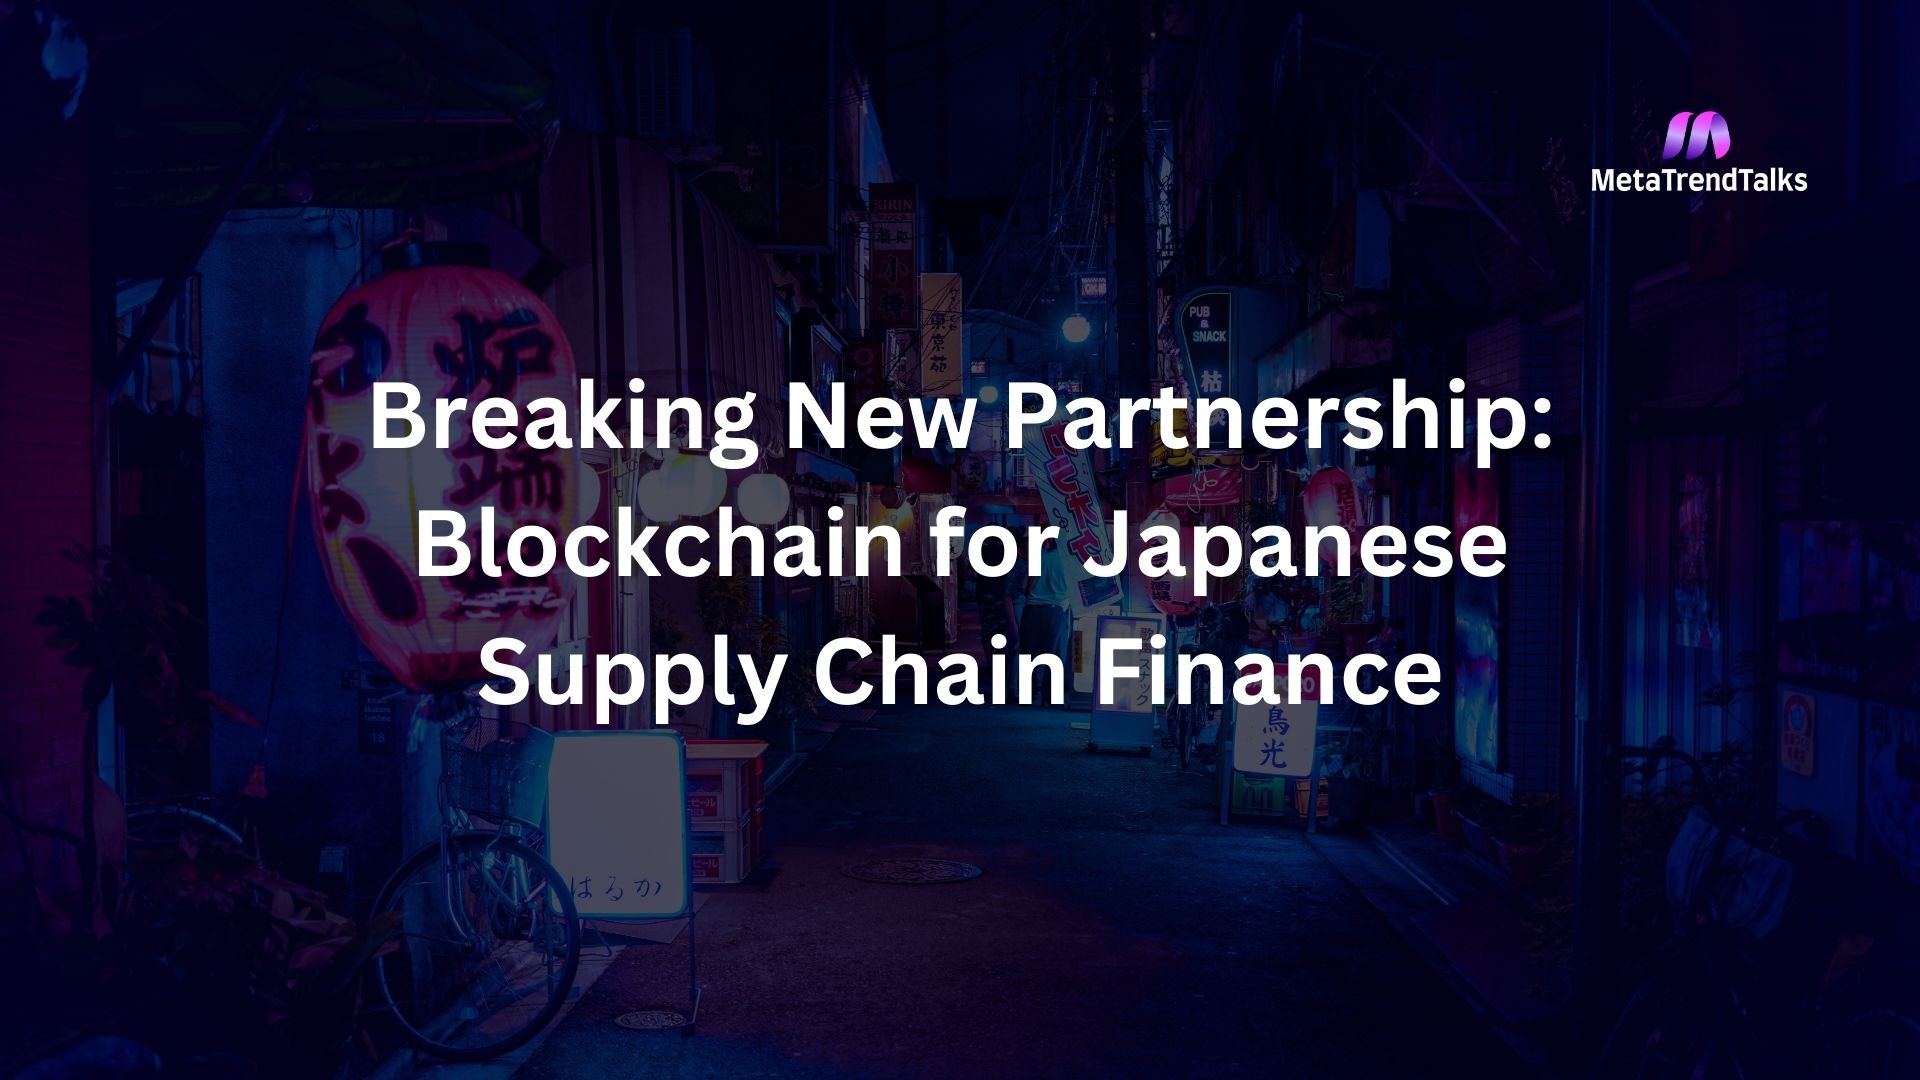 リップルがHashKey DX、SBIグループと提携: 日本のサプライチェーンの改革かの記事のサムネイル